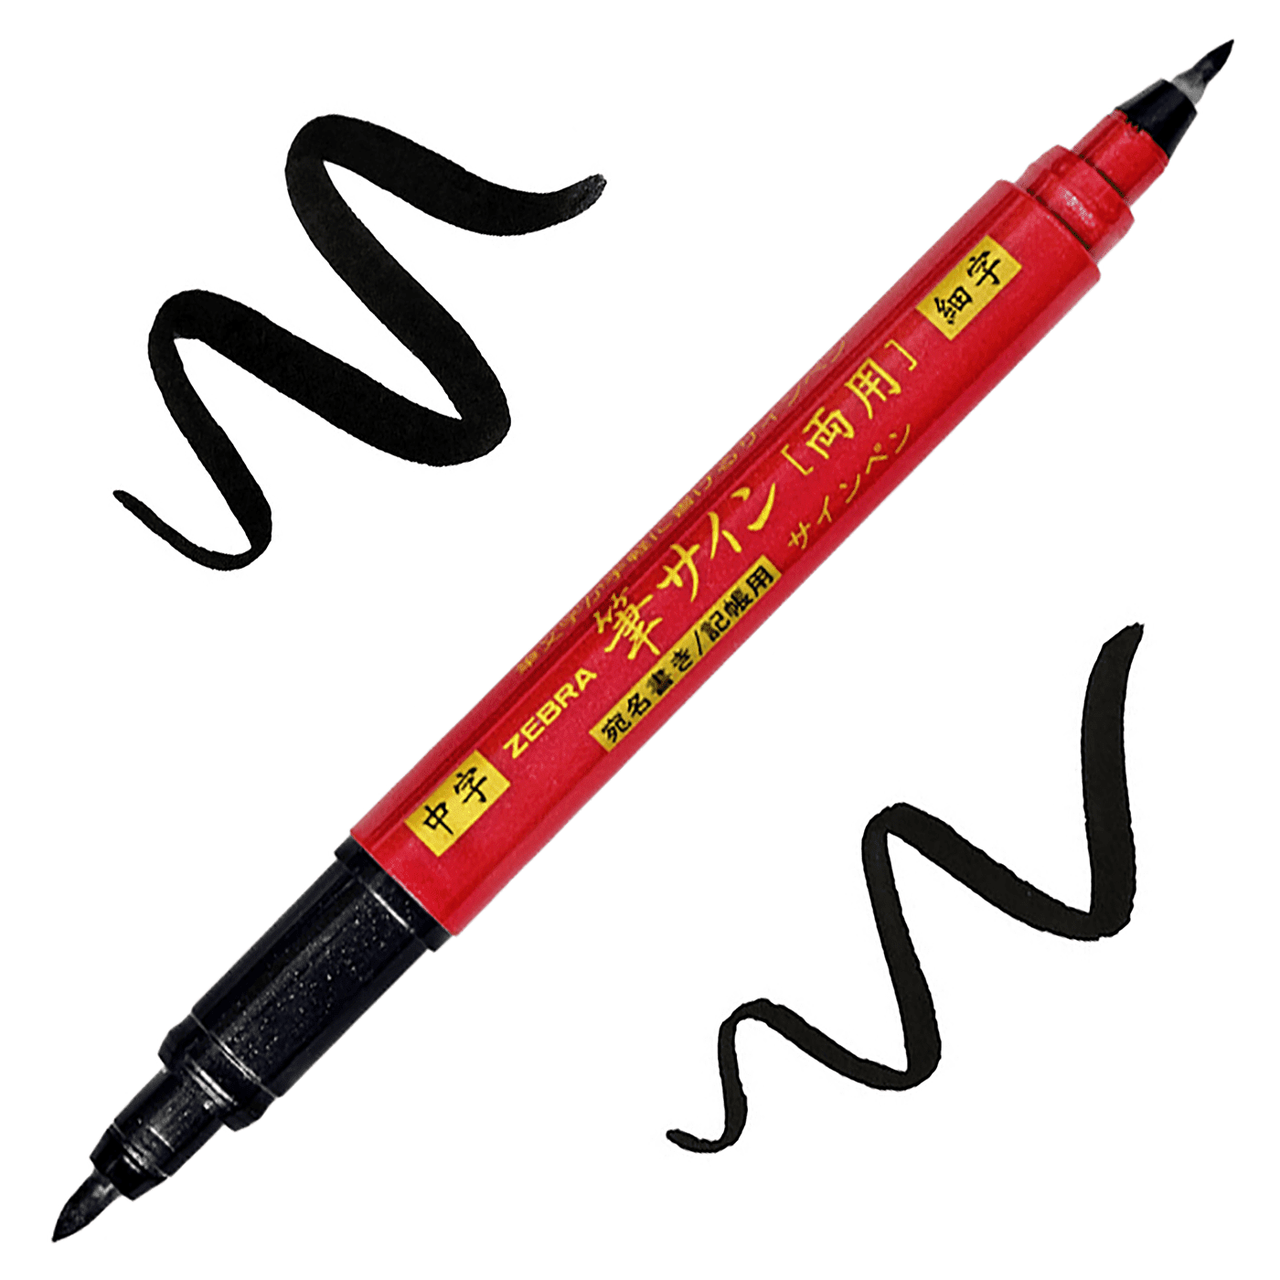 Zebra Zensations Double-Ended Brush Pen